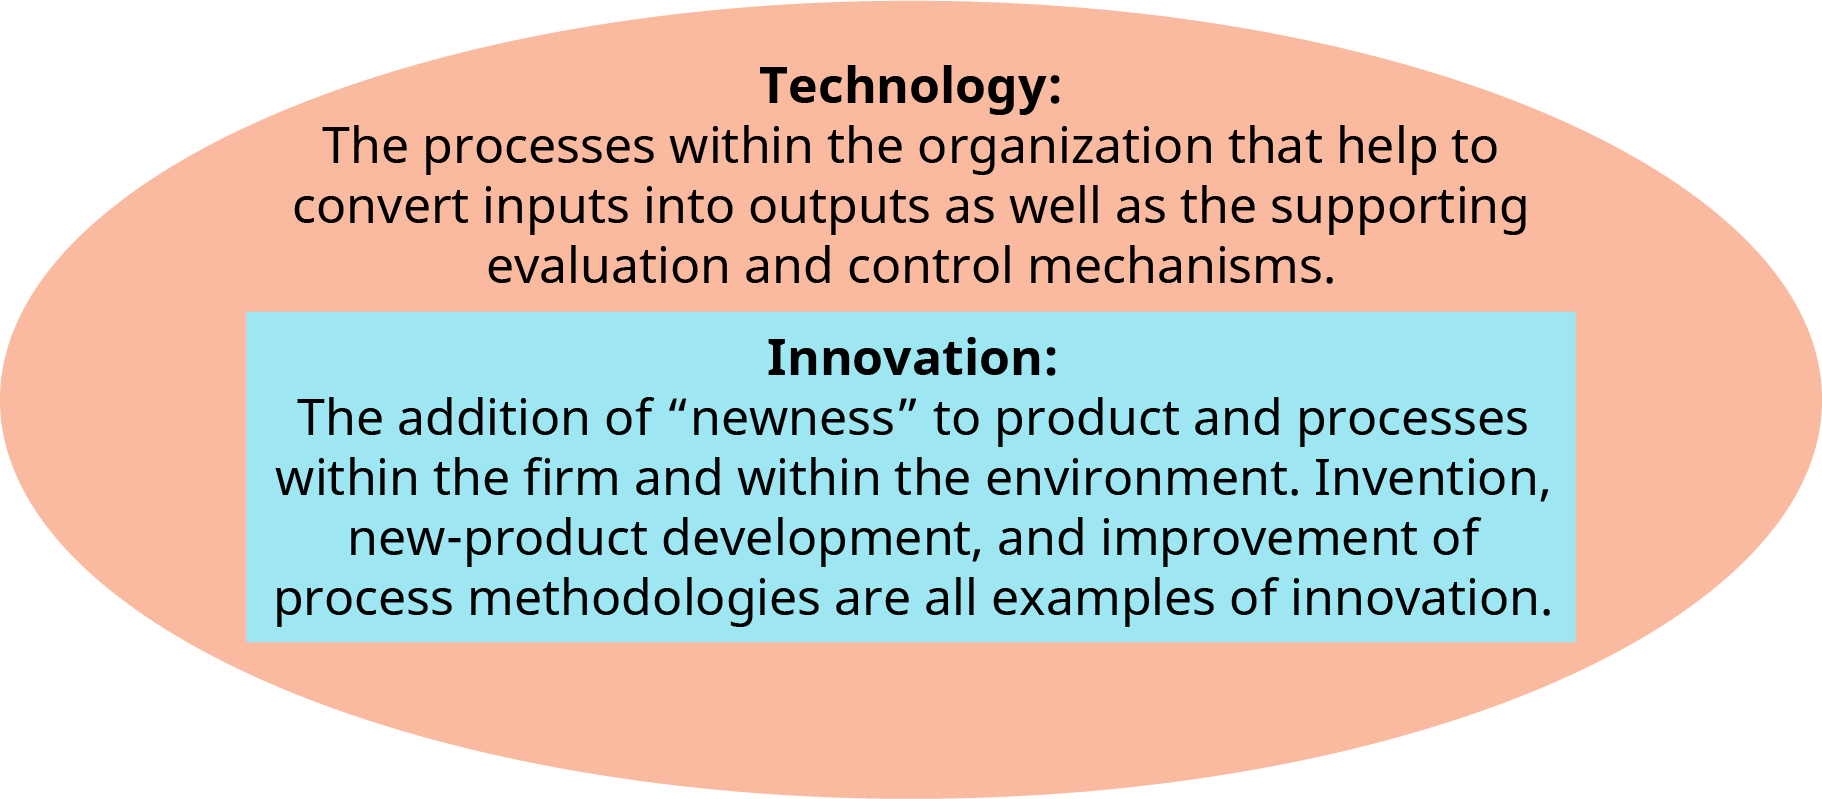 يُظهر الرسم التوضيحي تعريفات مصطلحي «التكنولوجيا» و «الابتكار» المتراكبة داخل شكل بيضاوي.